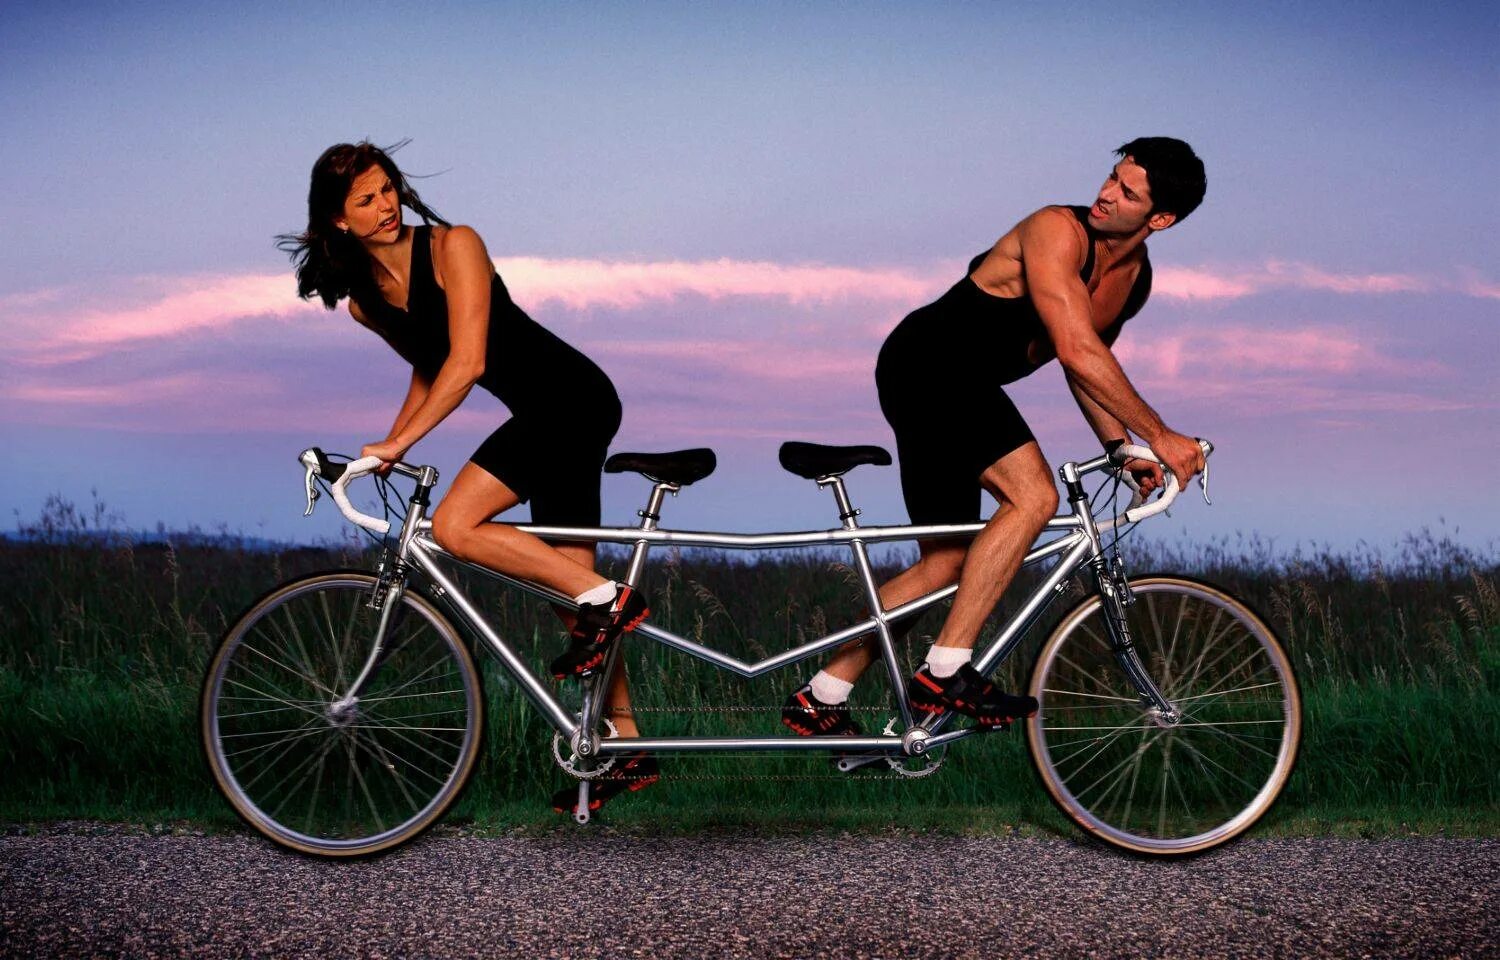 Зависимые отношения людей. Мужчина иженшина на велосипеде. Парень с девушкой на велосипеде. Велосипед для двоих. Женщина на велосипеде.